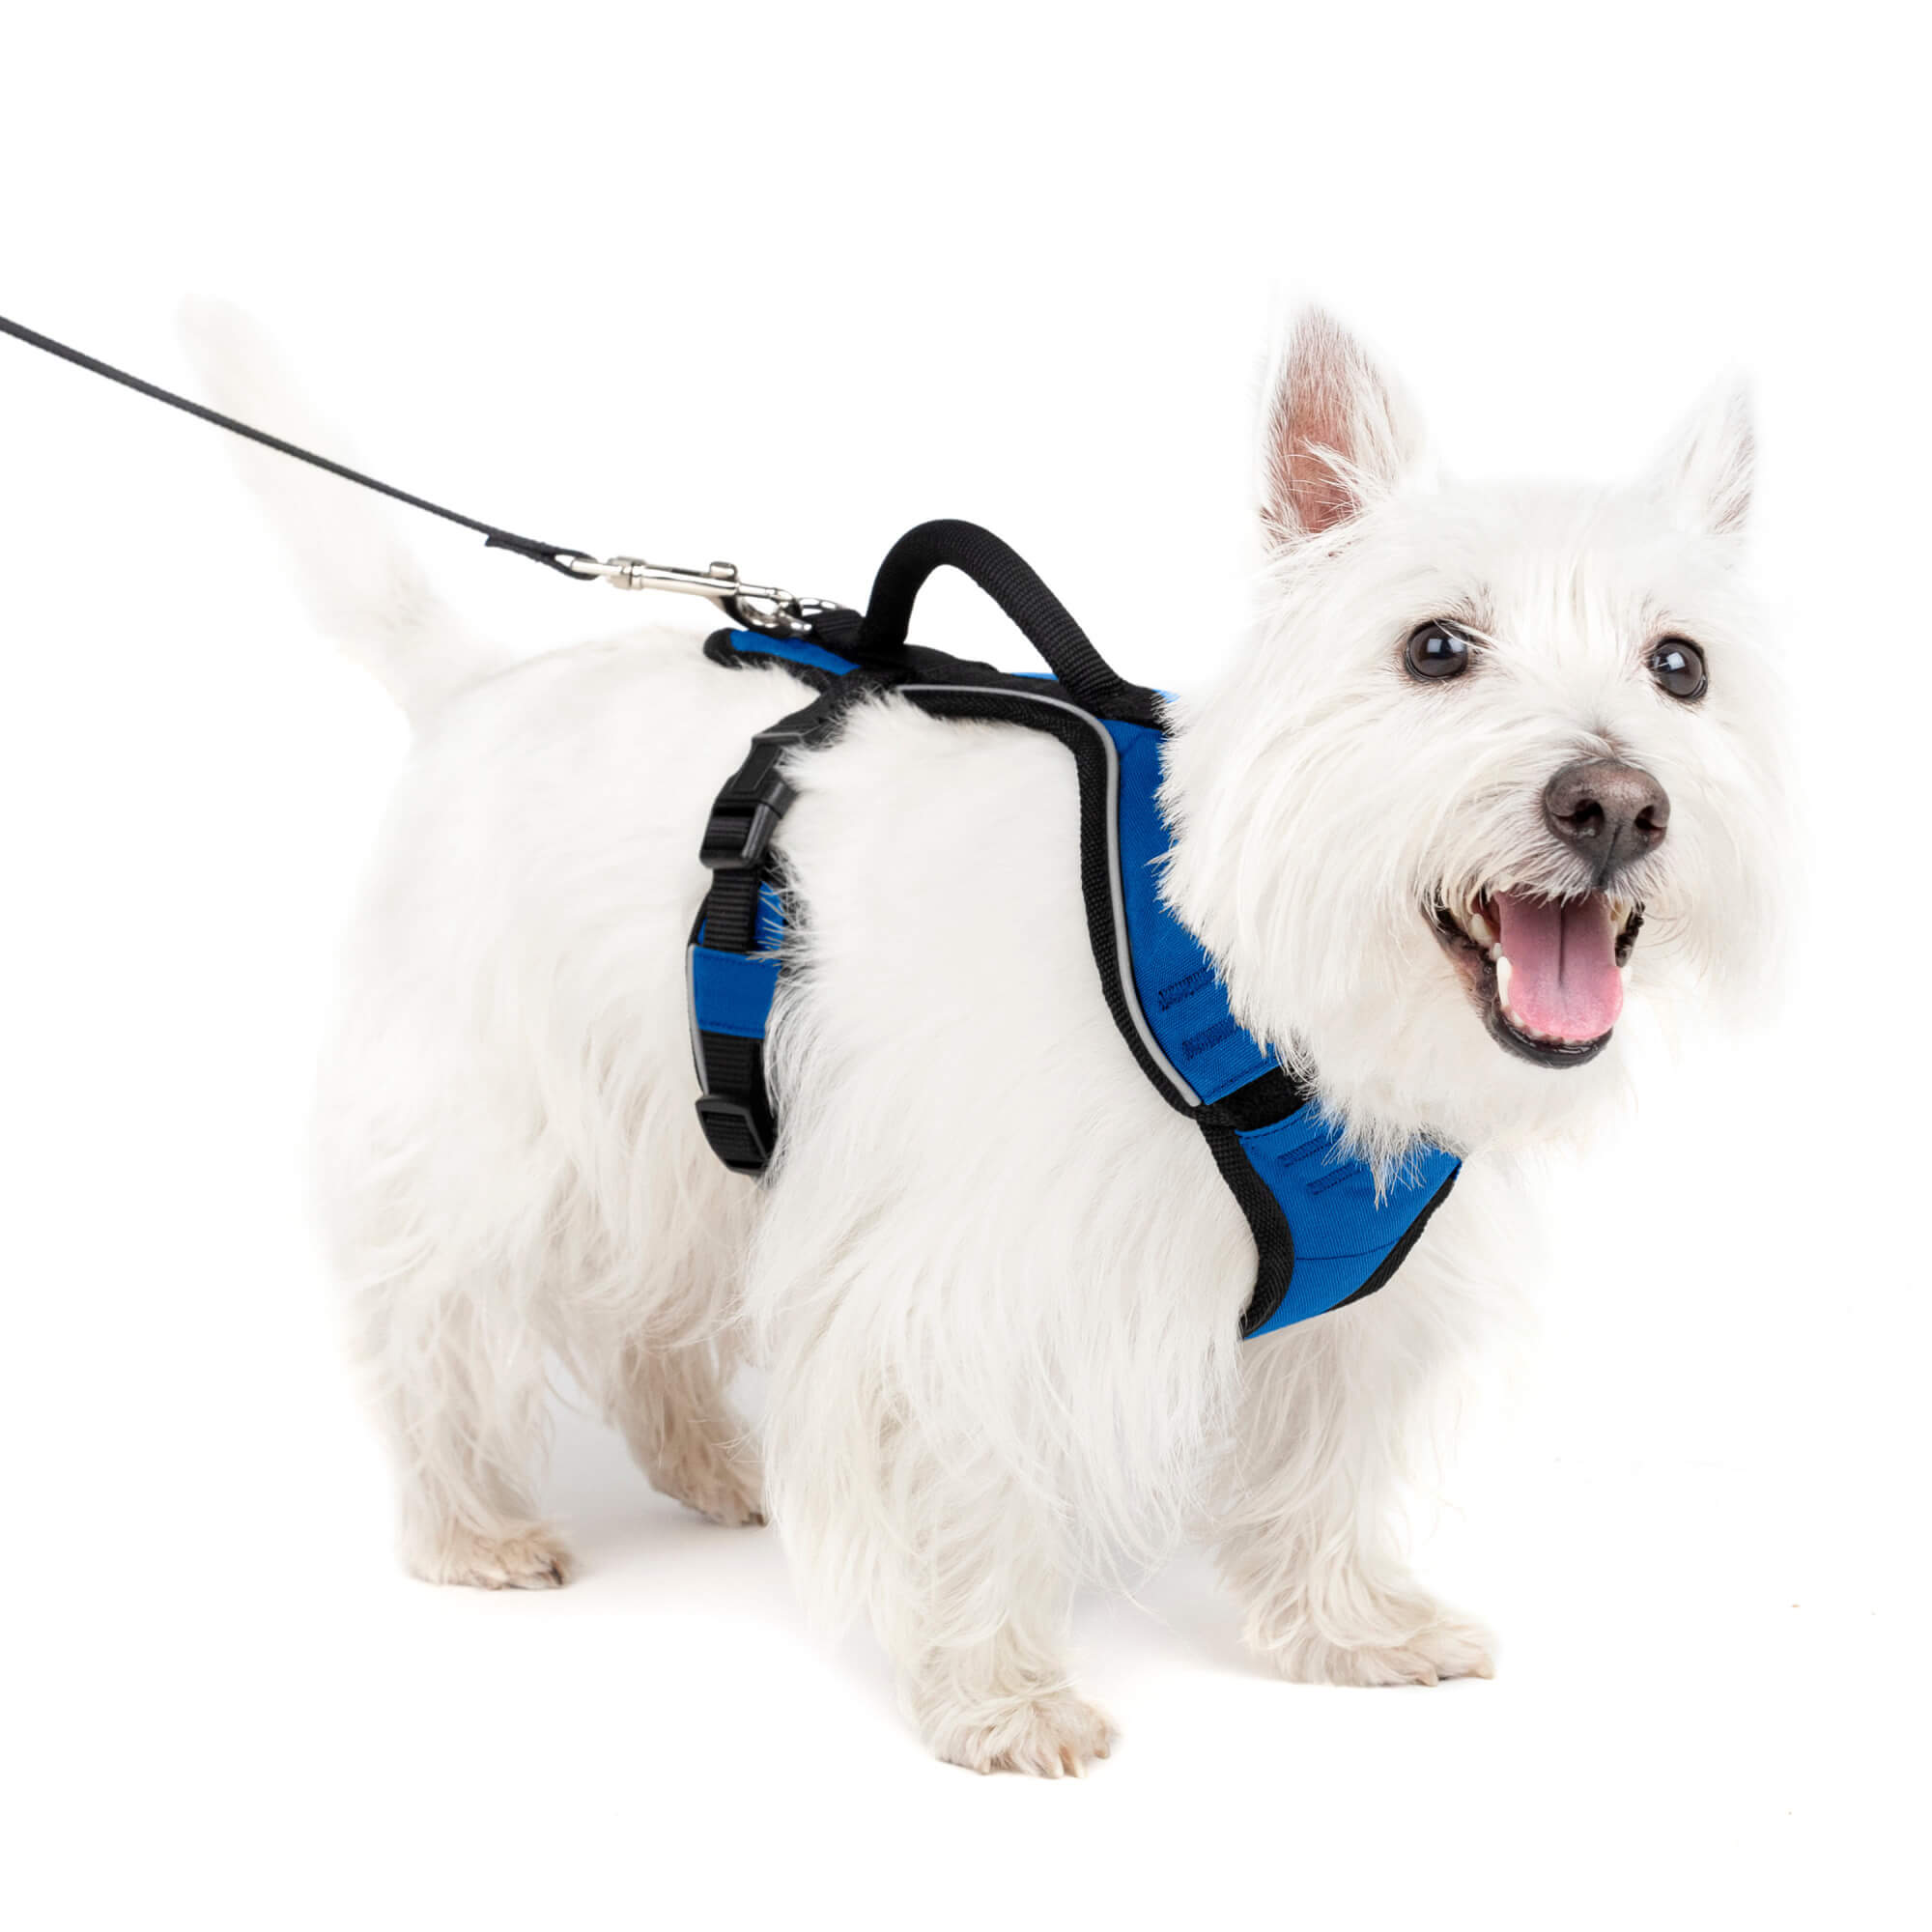 Dog wearing blue petsafe easysport harness in small